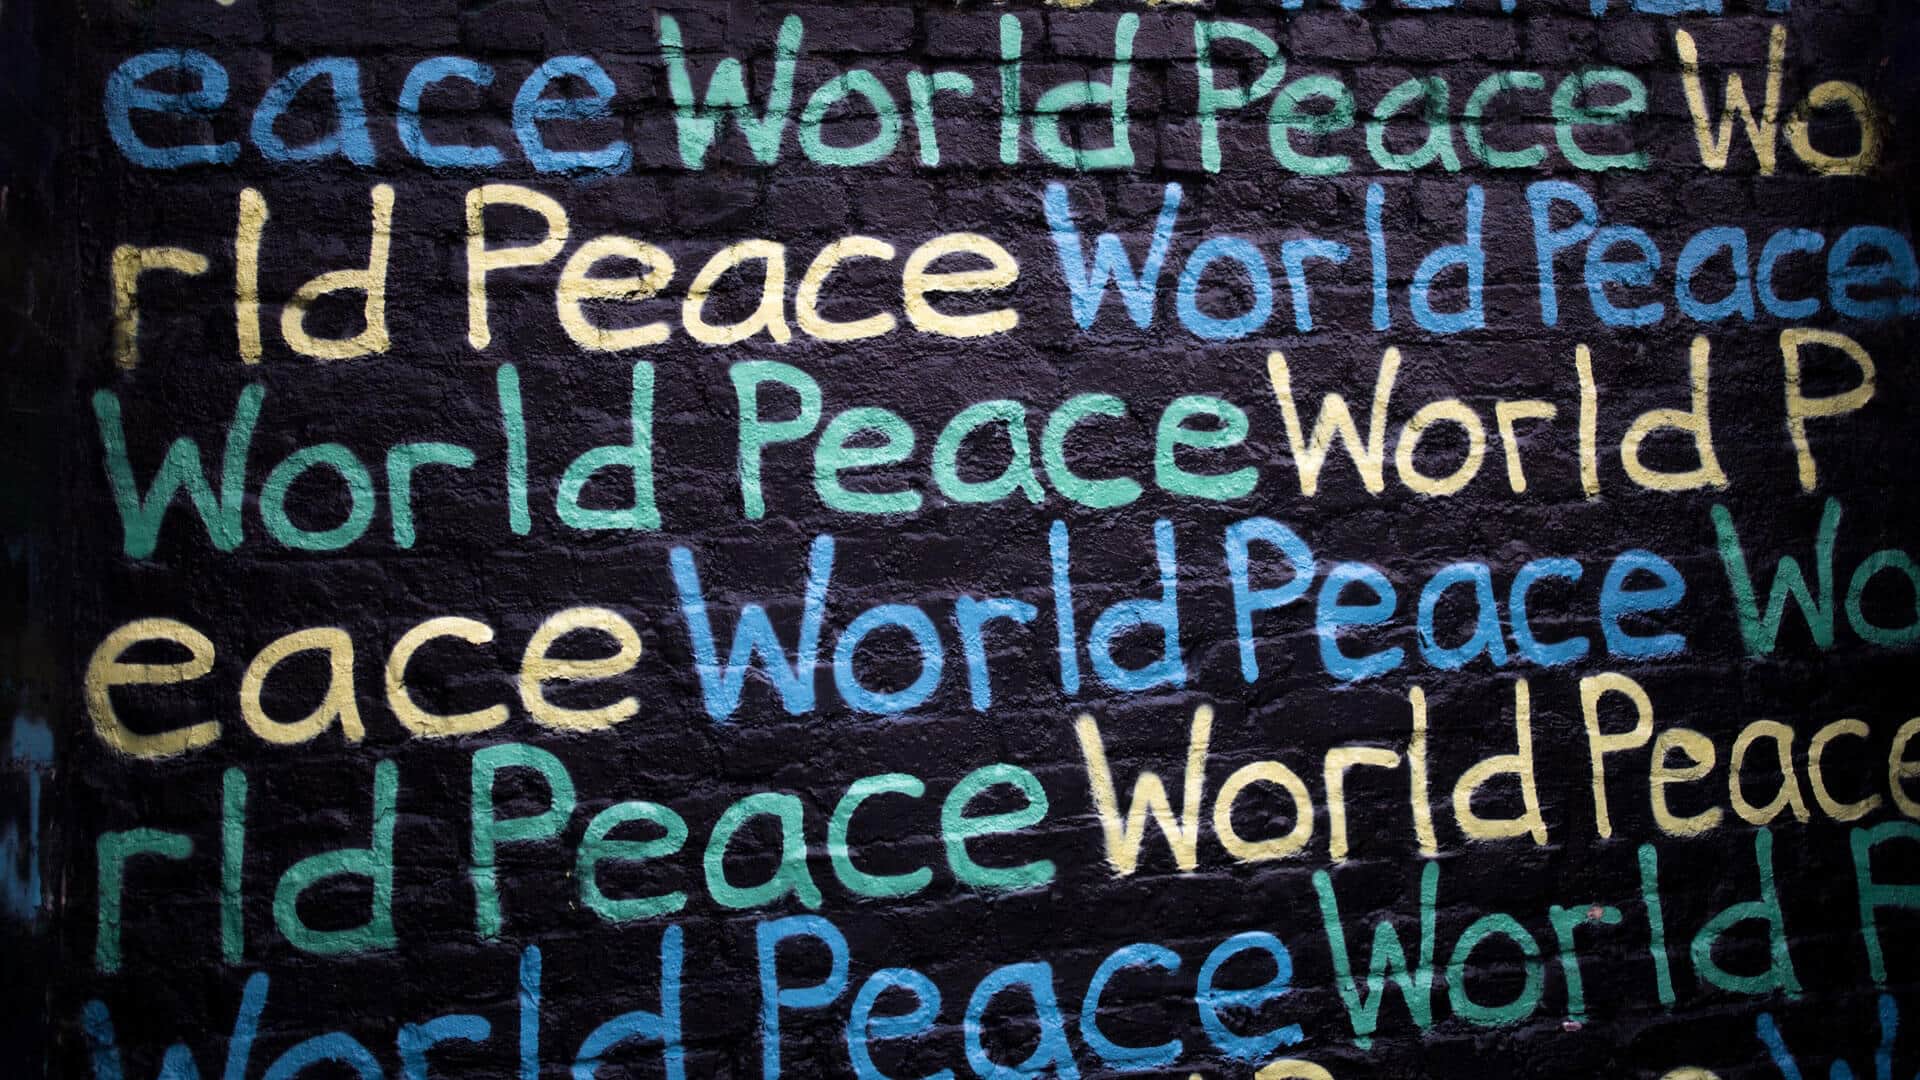 mural com as palavras "world peace"